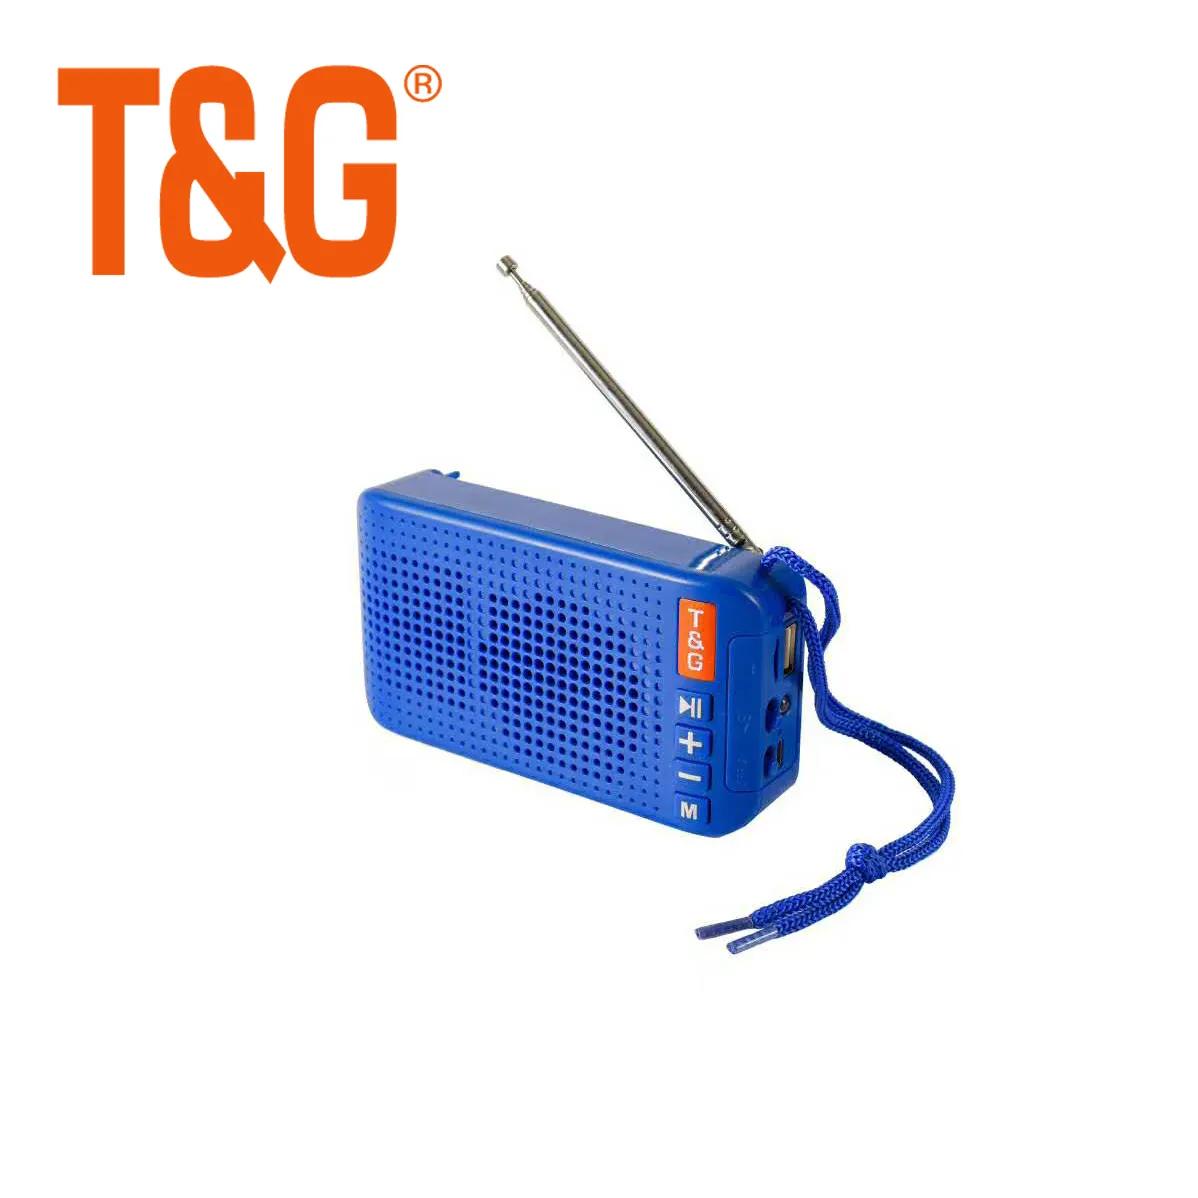 Minialtavoz TWS TG184, con antena de linterna, altavoz inalámbrico alimentado por energía solar, con radio FM y tarjeta TF USB